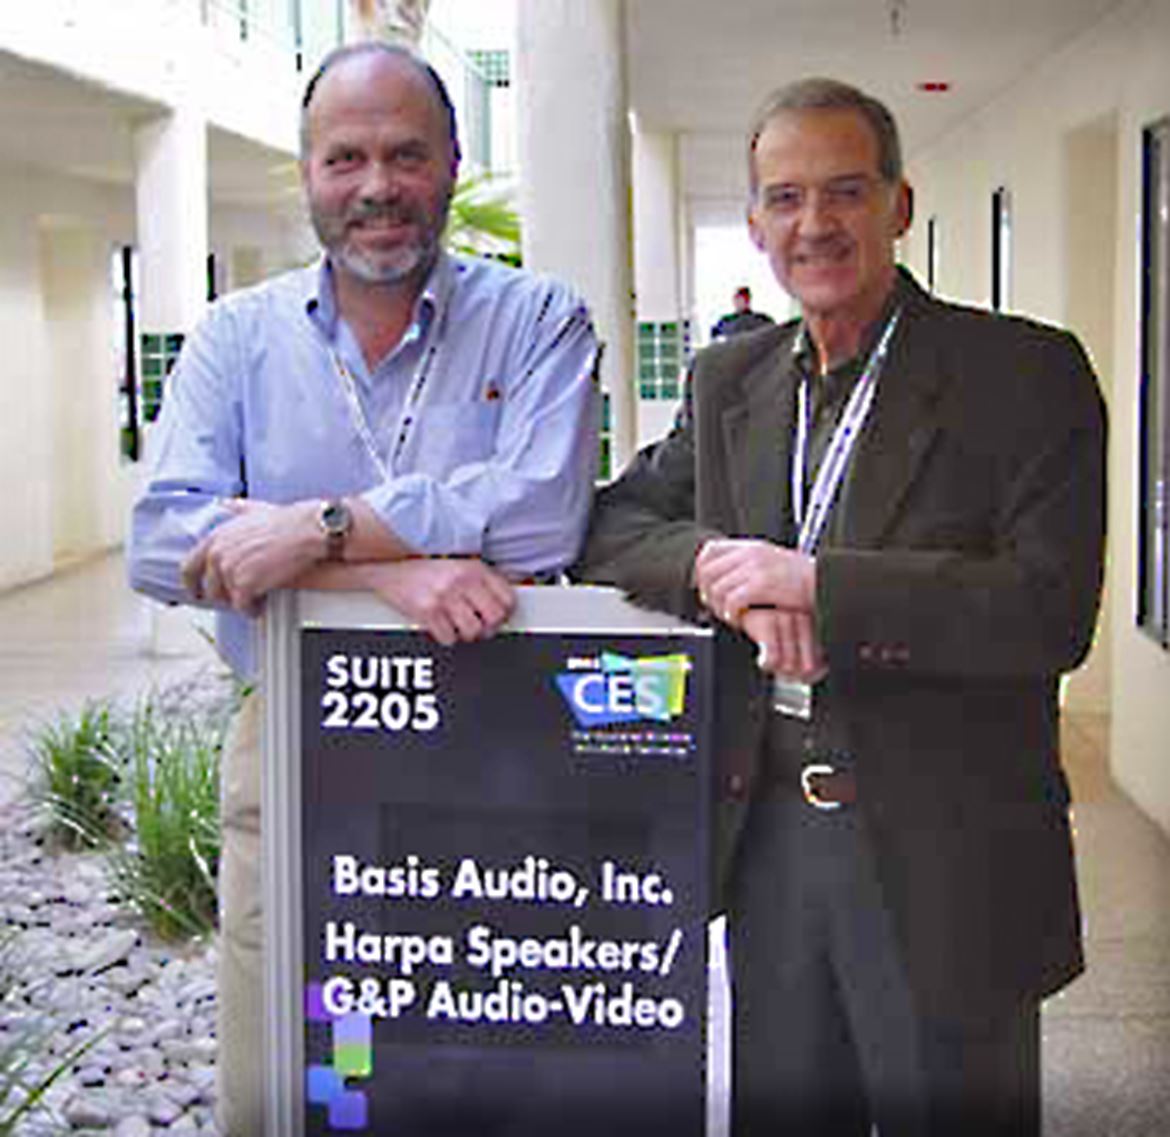 Luis Pires e João Çonçalves na CES 2002 (Alexis Park, Las Vegas)